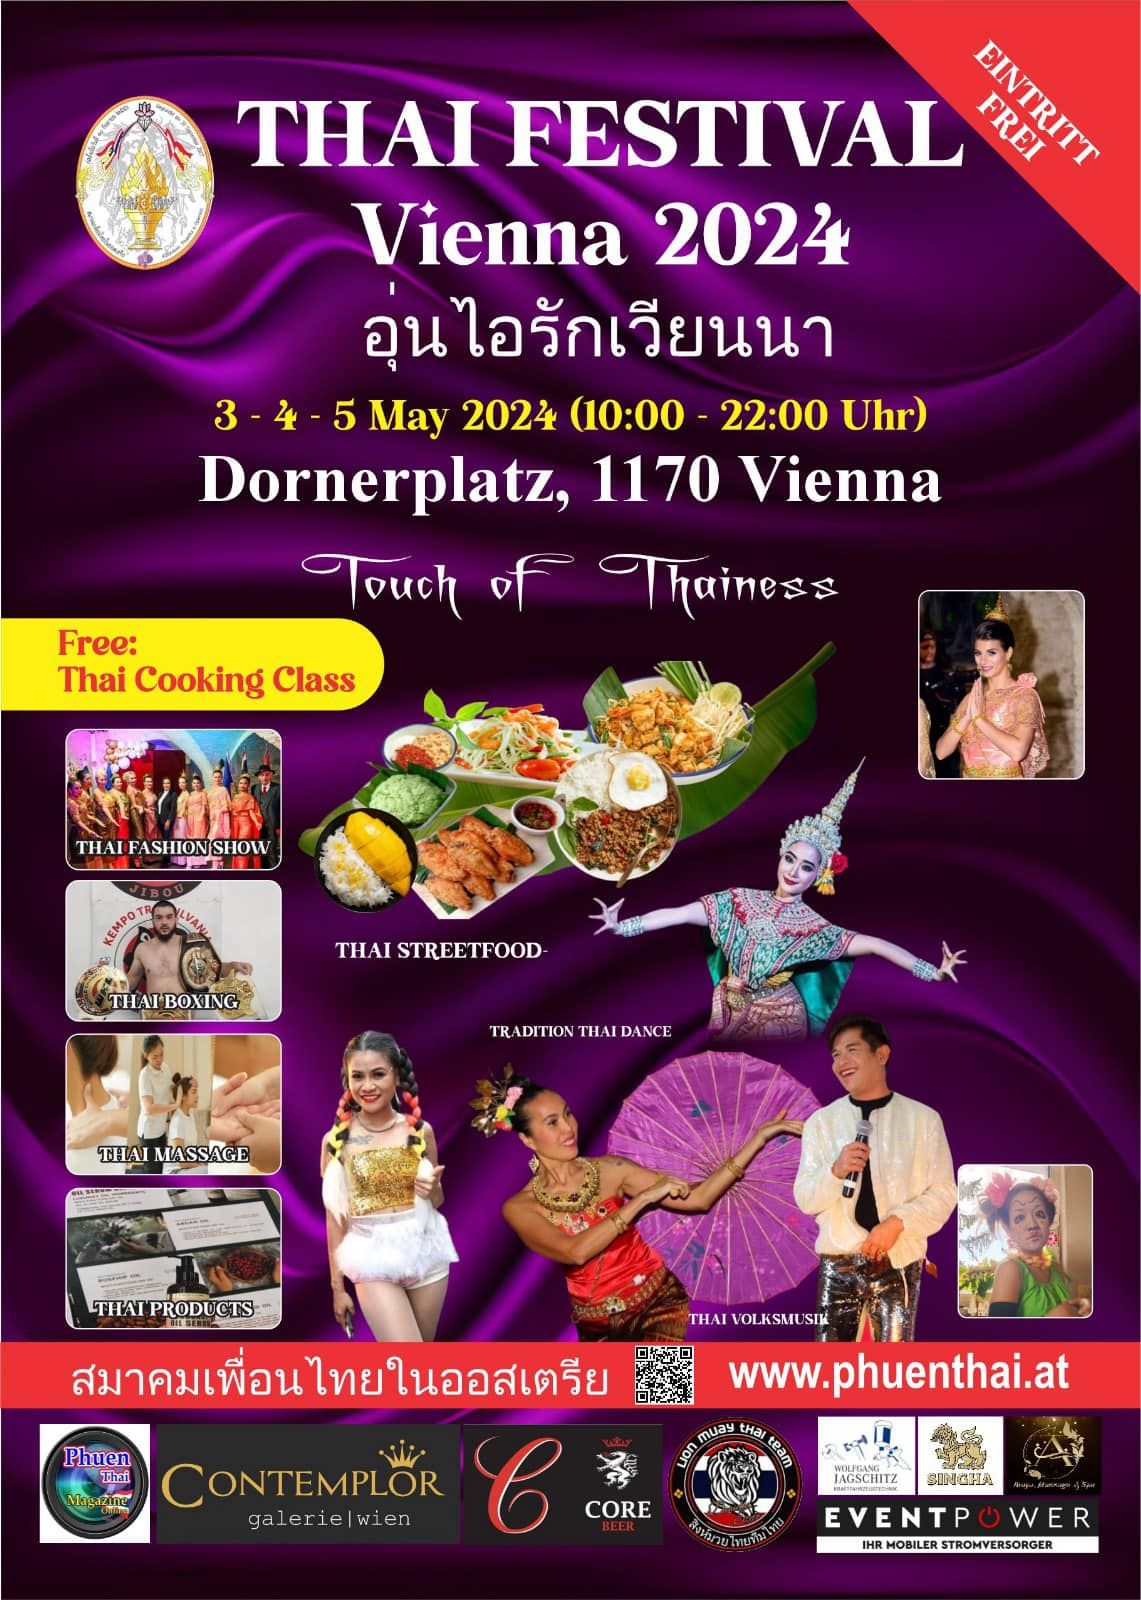 Thai Festival Vienna 2024 \ud83c\uddf9\ud83c\udded